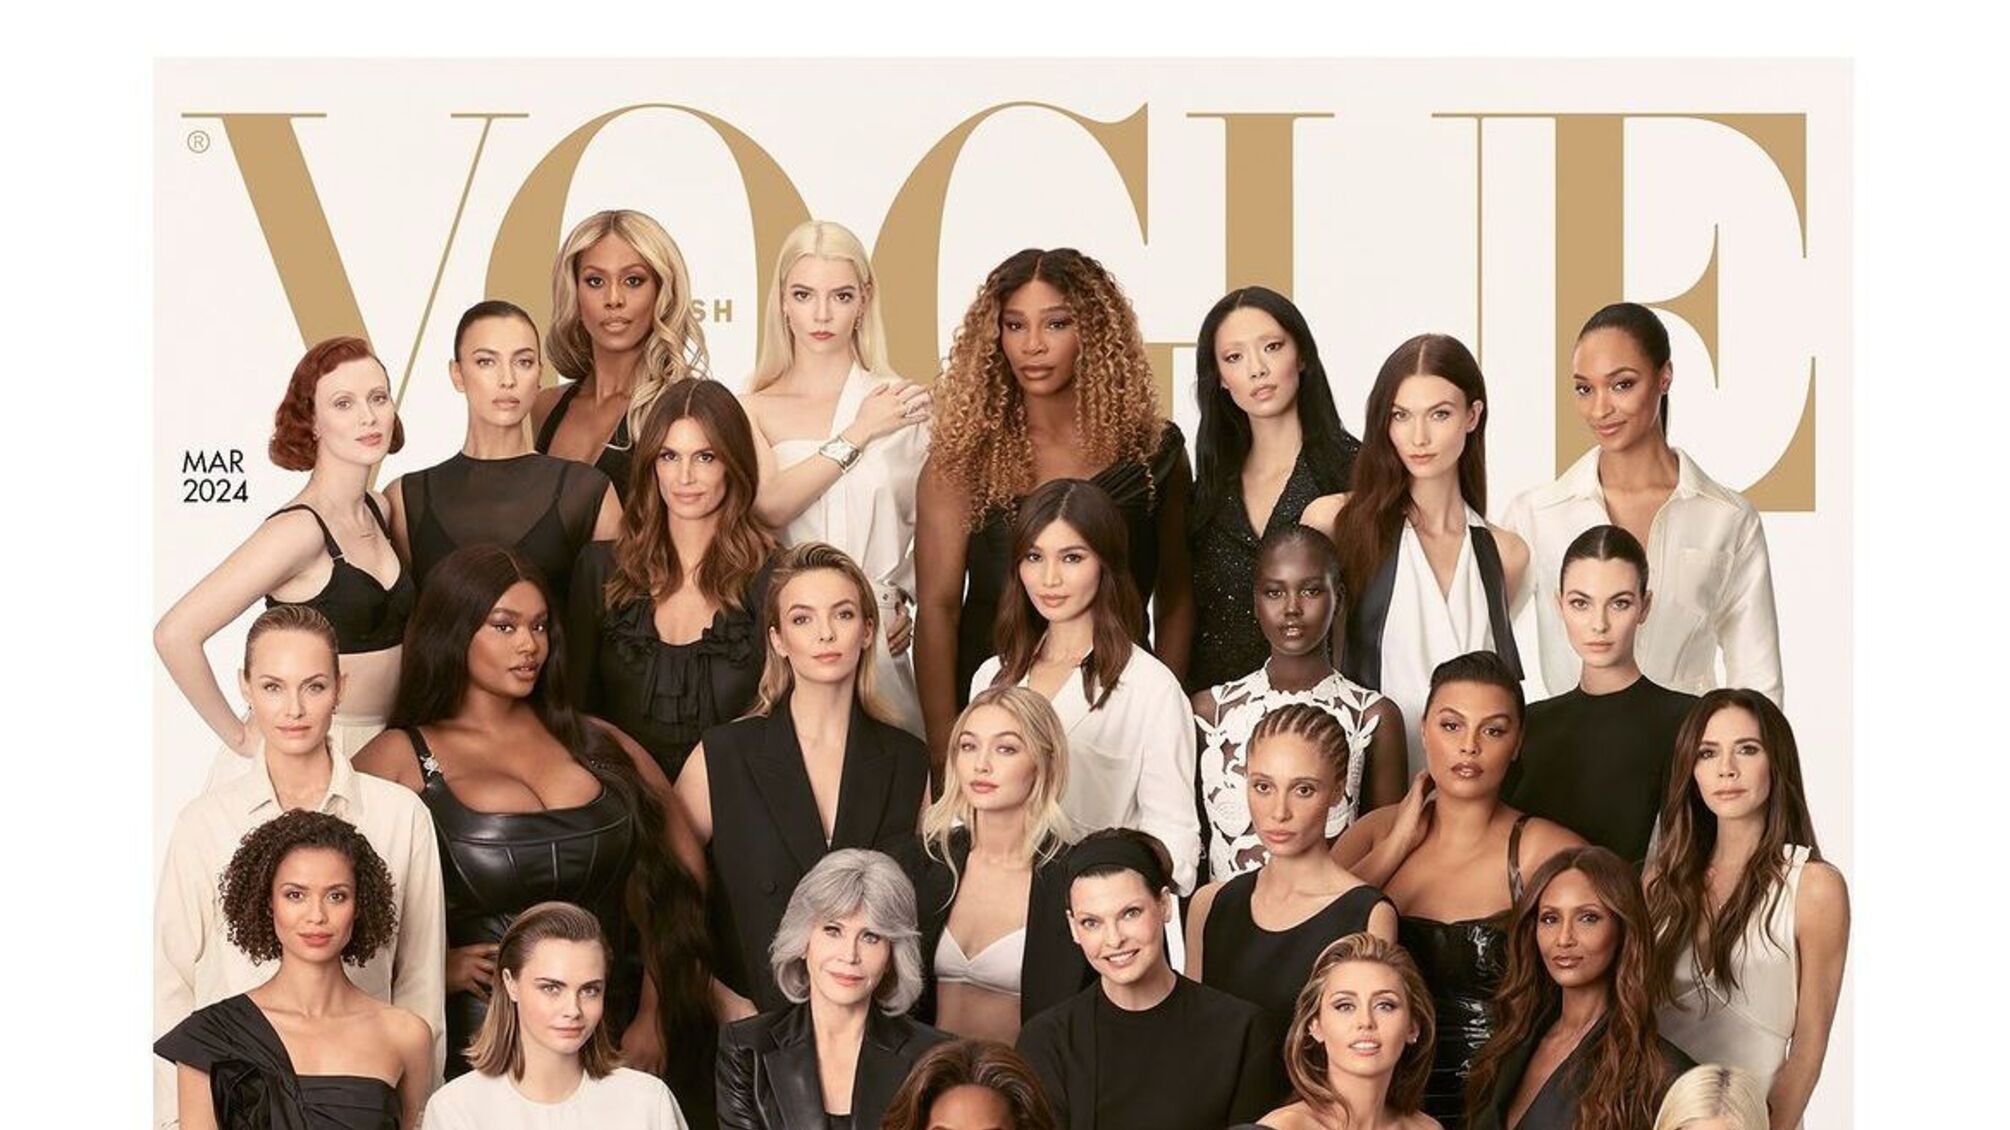 Сальма Хаєк, Майлі Сайрус, Вікторія Бекхем та інші зірки Голлівуду – на обкладинці весняного Vogue 